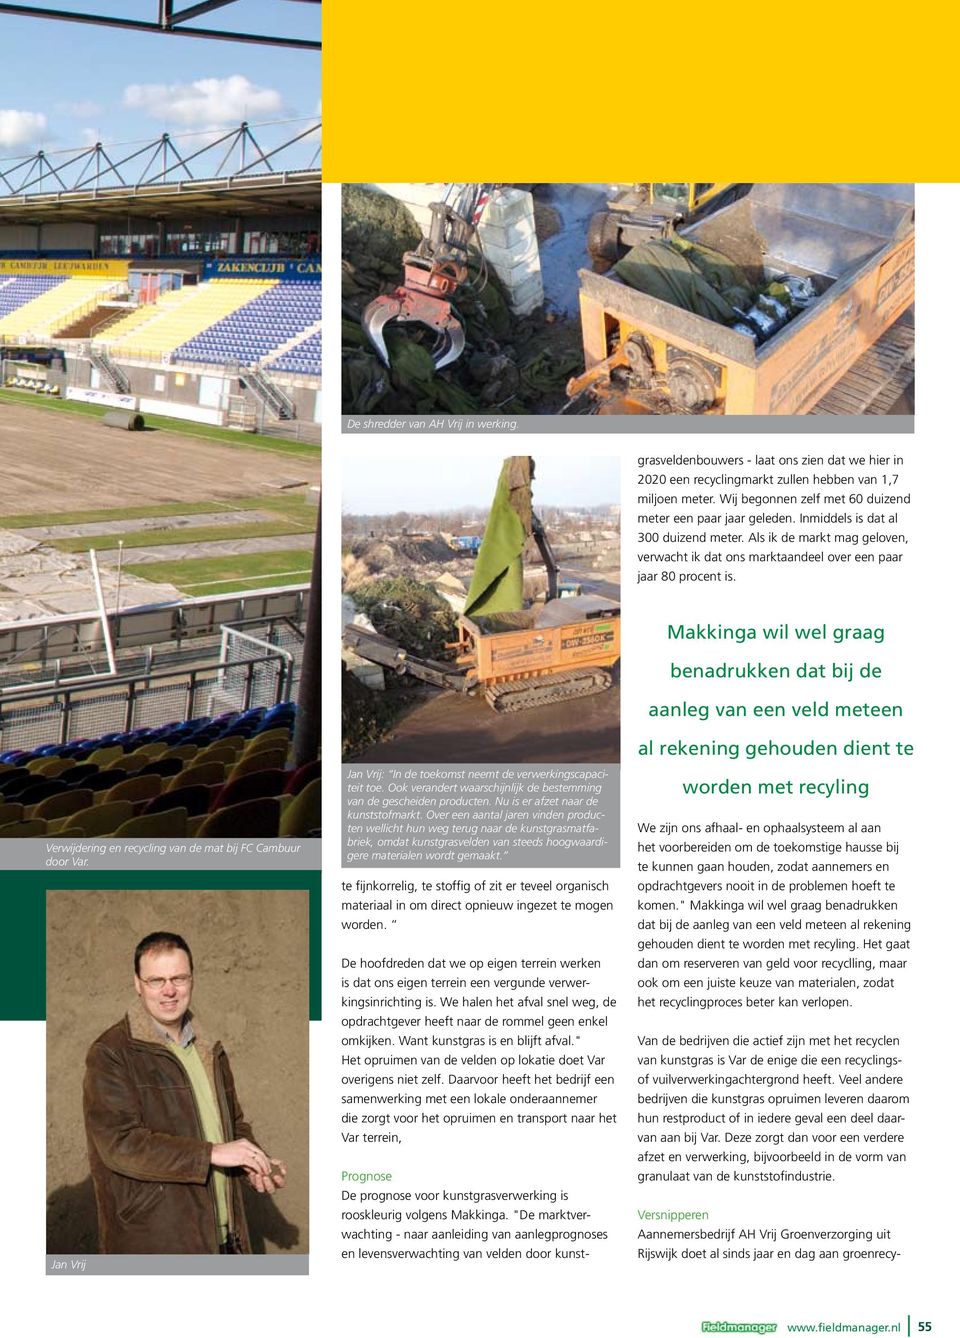 Verwijdering en recycling van de mat bij FC Cambuur door Var. Jan Vrij Jan Vrij: In de toekomst neemt de verwerkingscapaciteit toe.